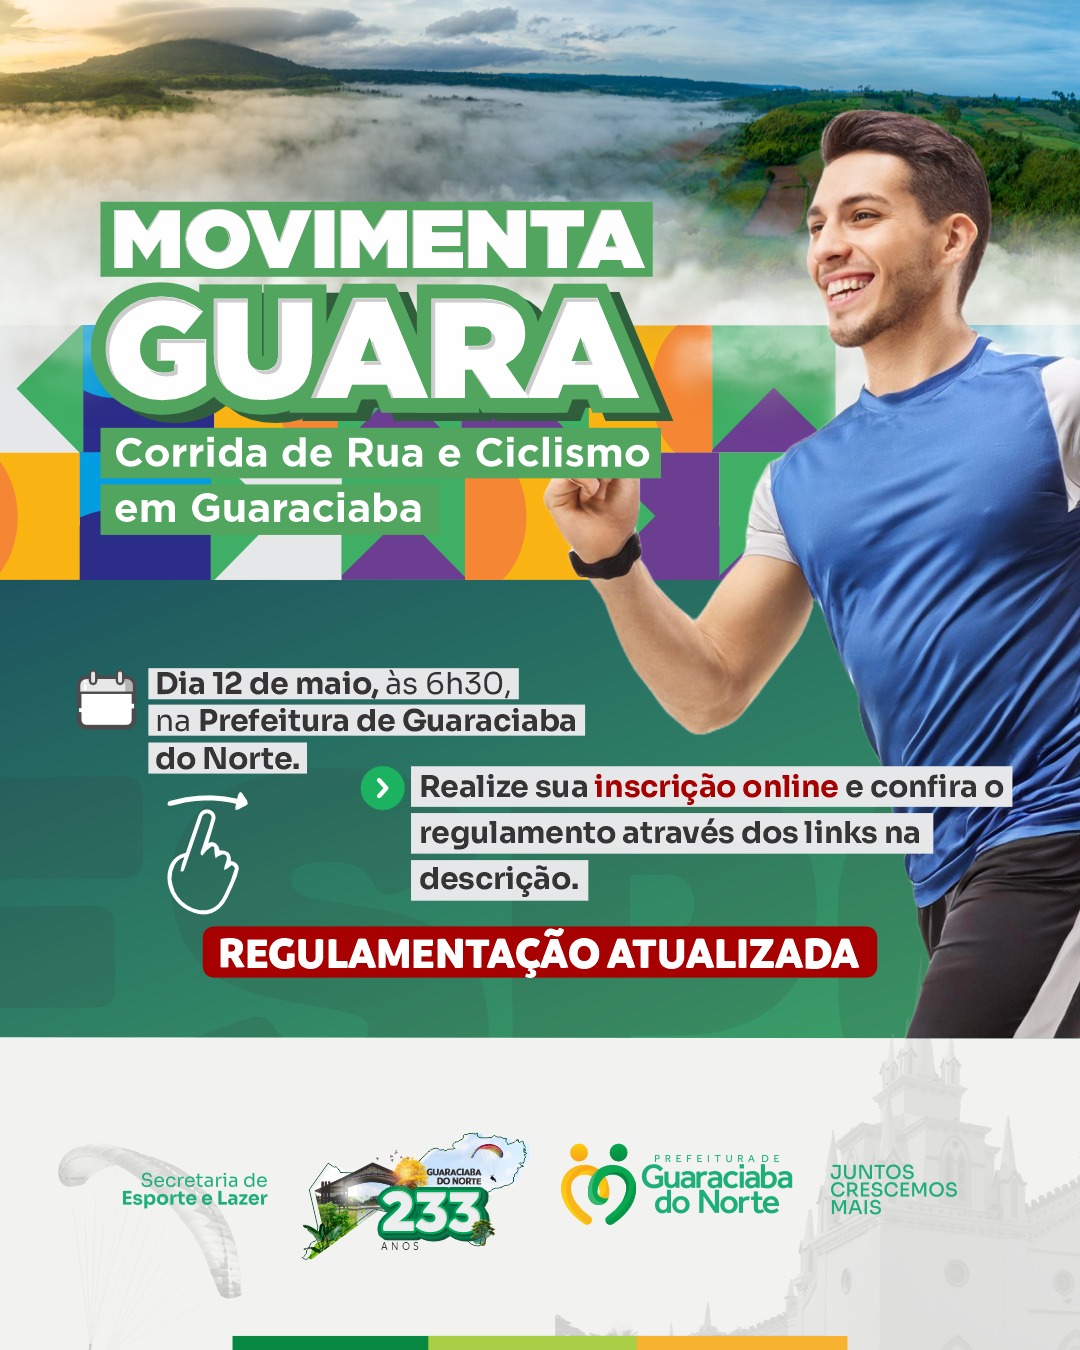 Participe da Corrida de Rua e Ciclismo em Guaraciaba!